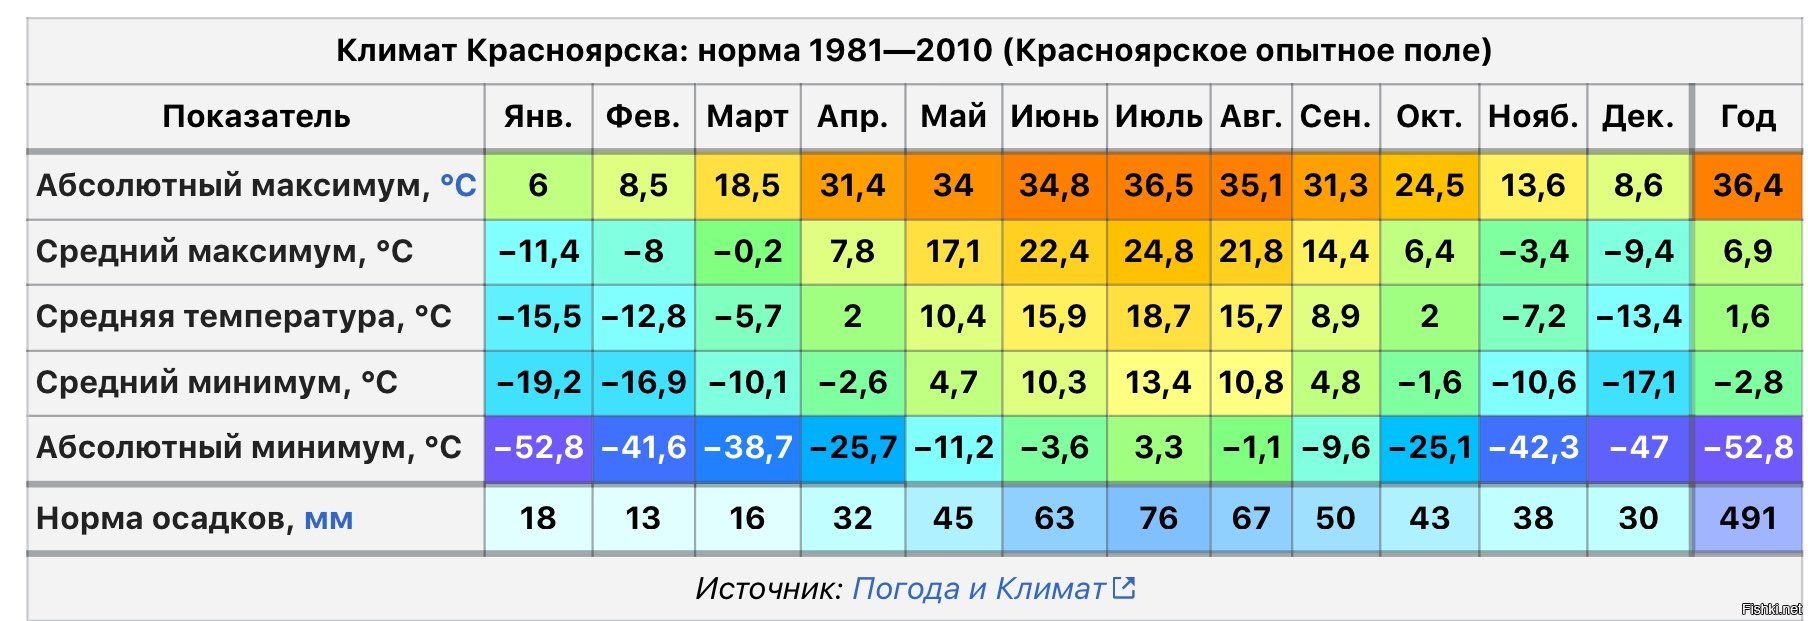 Какая самая низкая температура в воронеже. Средняя температура в Красноярске по месяцам. Средняя температура зимой во Владивостоке. Средняя температура в Петропавловске Камчатском в январе и июле. Среднемесячная температура во Владивостоке.